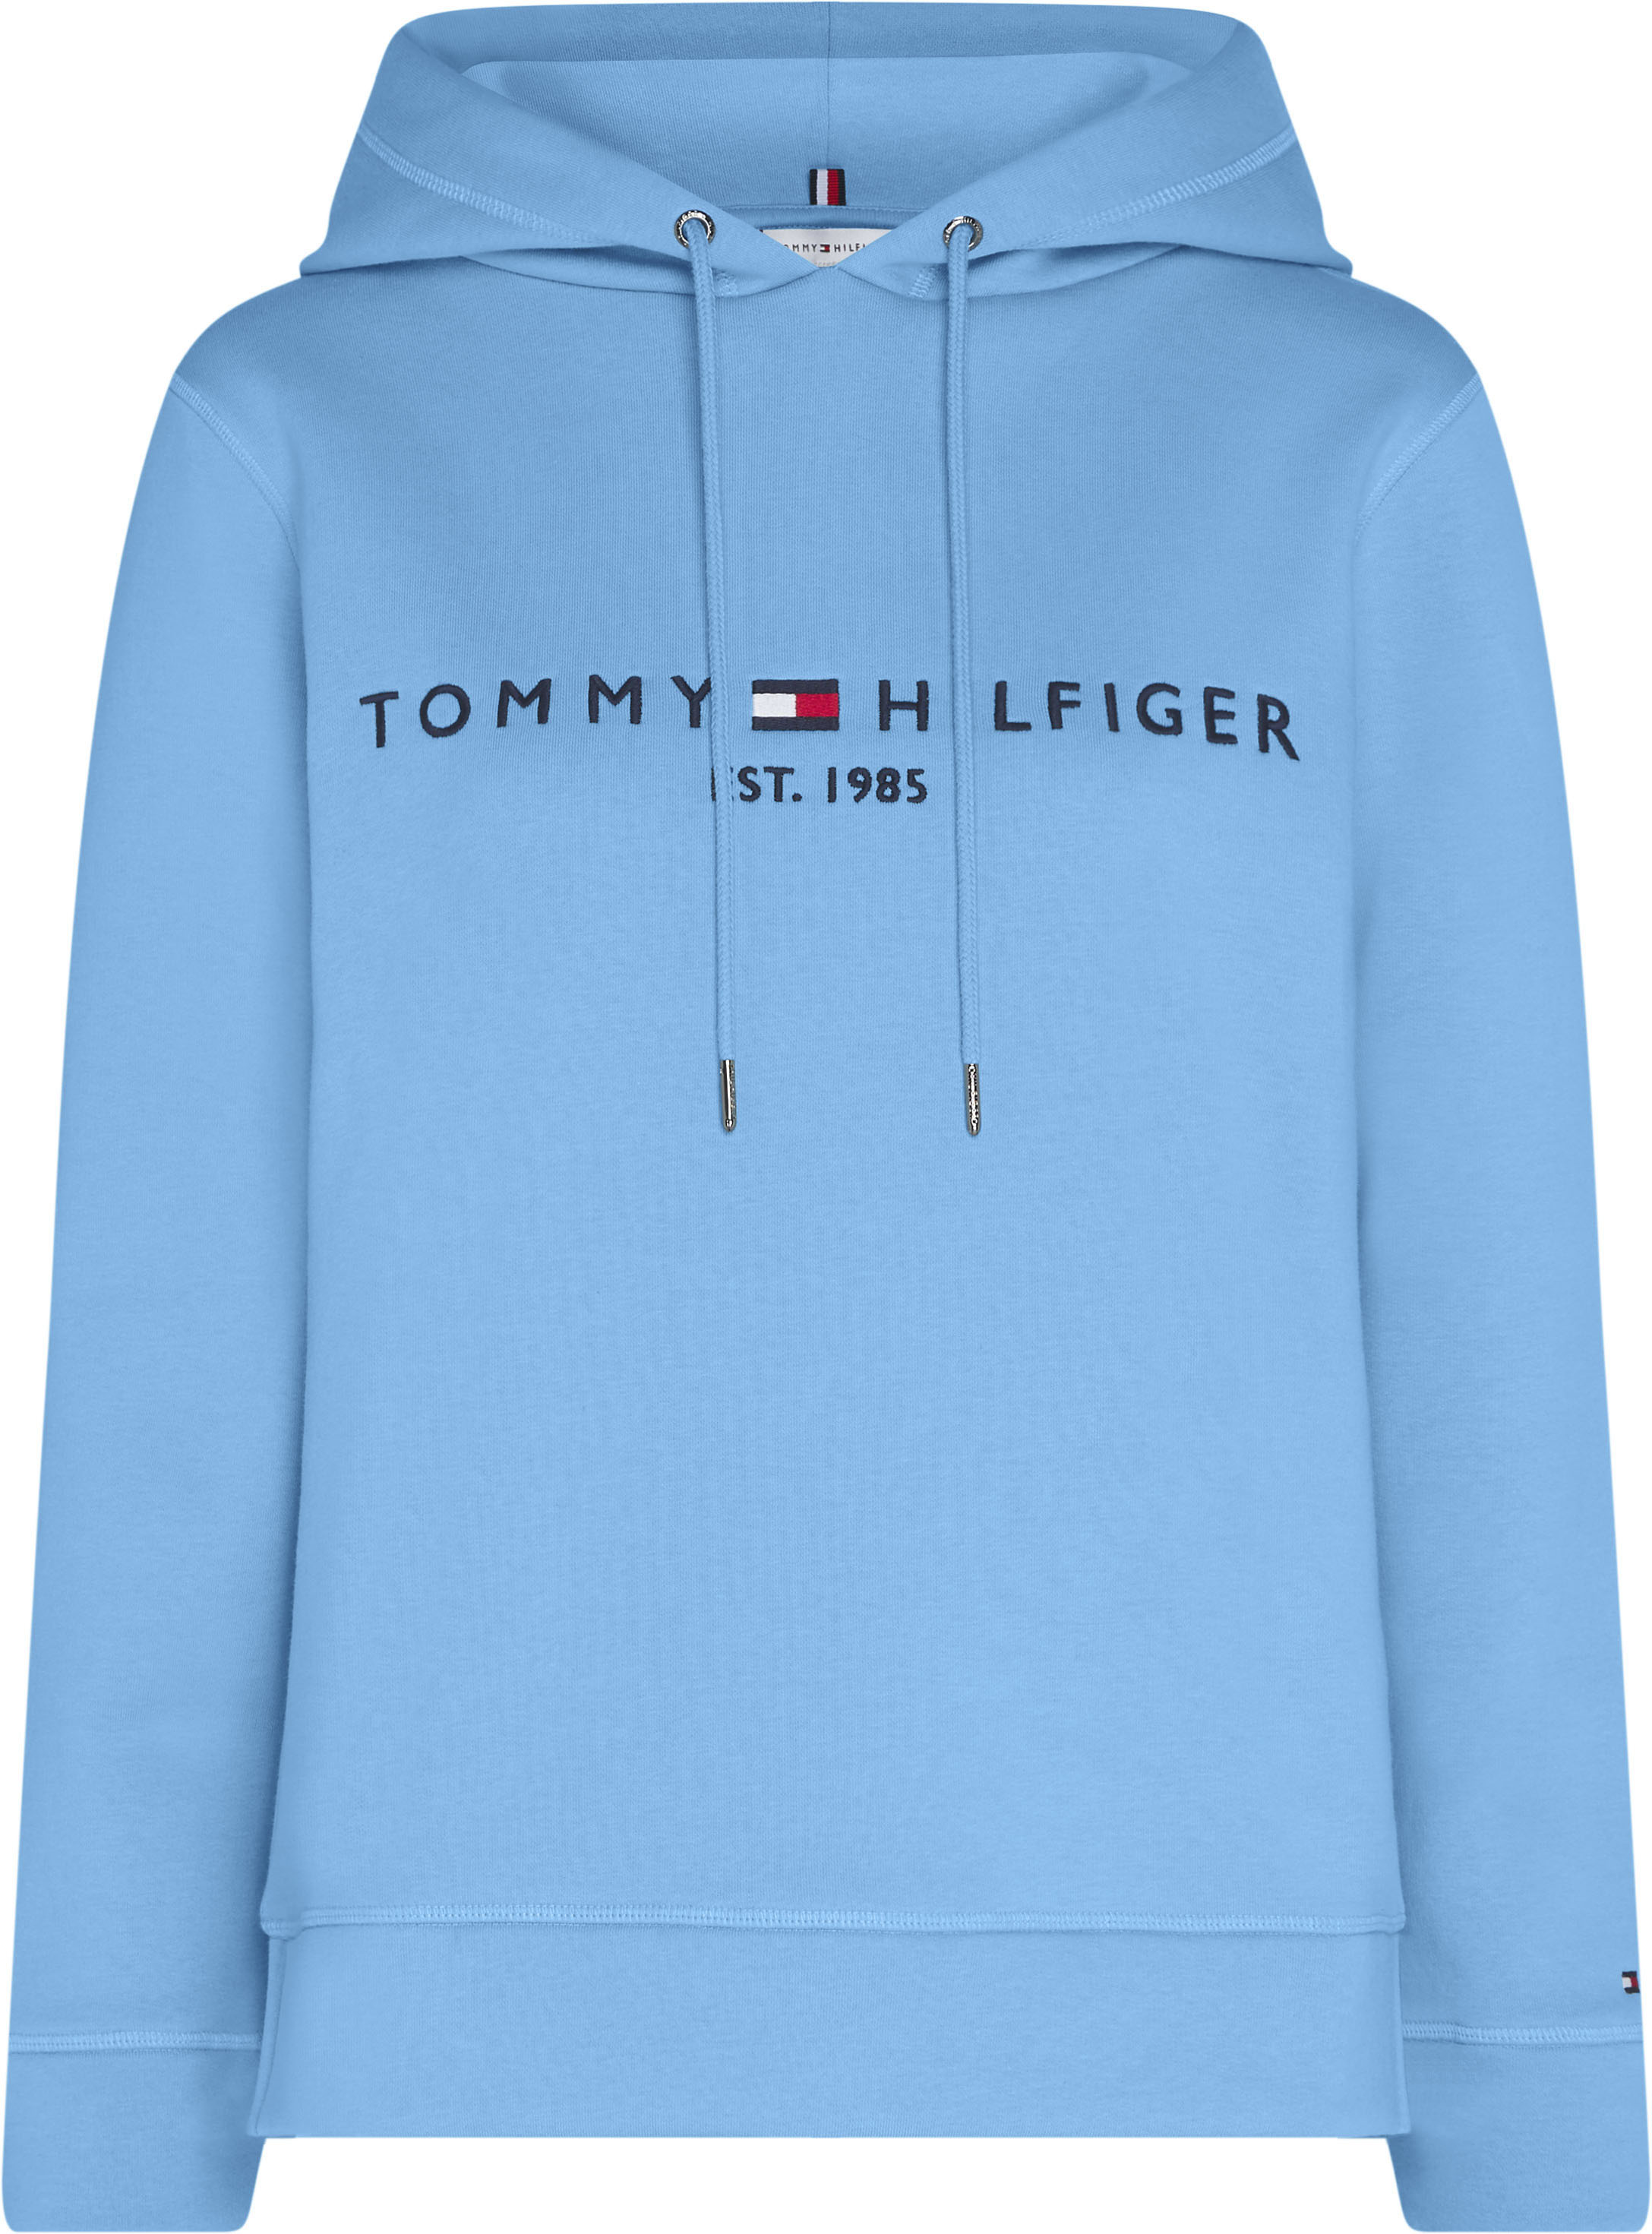 Tommy Hilfiger Kapuzensweatshirt REGULAR HILFIGER HOODIE, mit großem Tommy Hilfiger Logoschriftzug